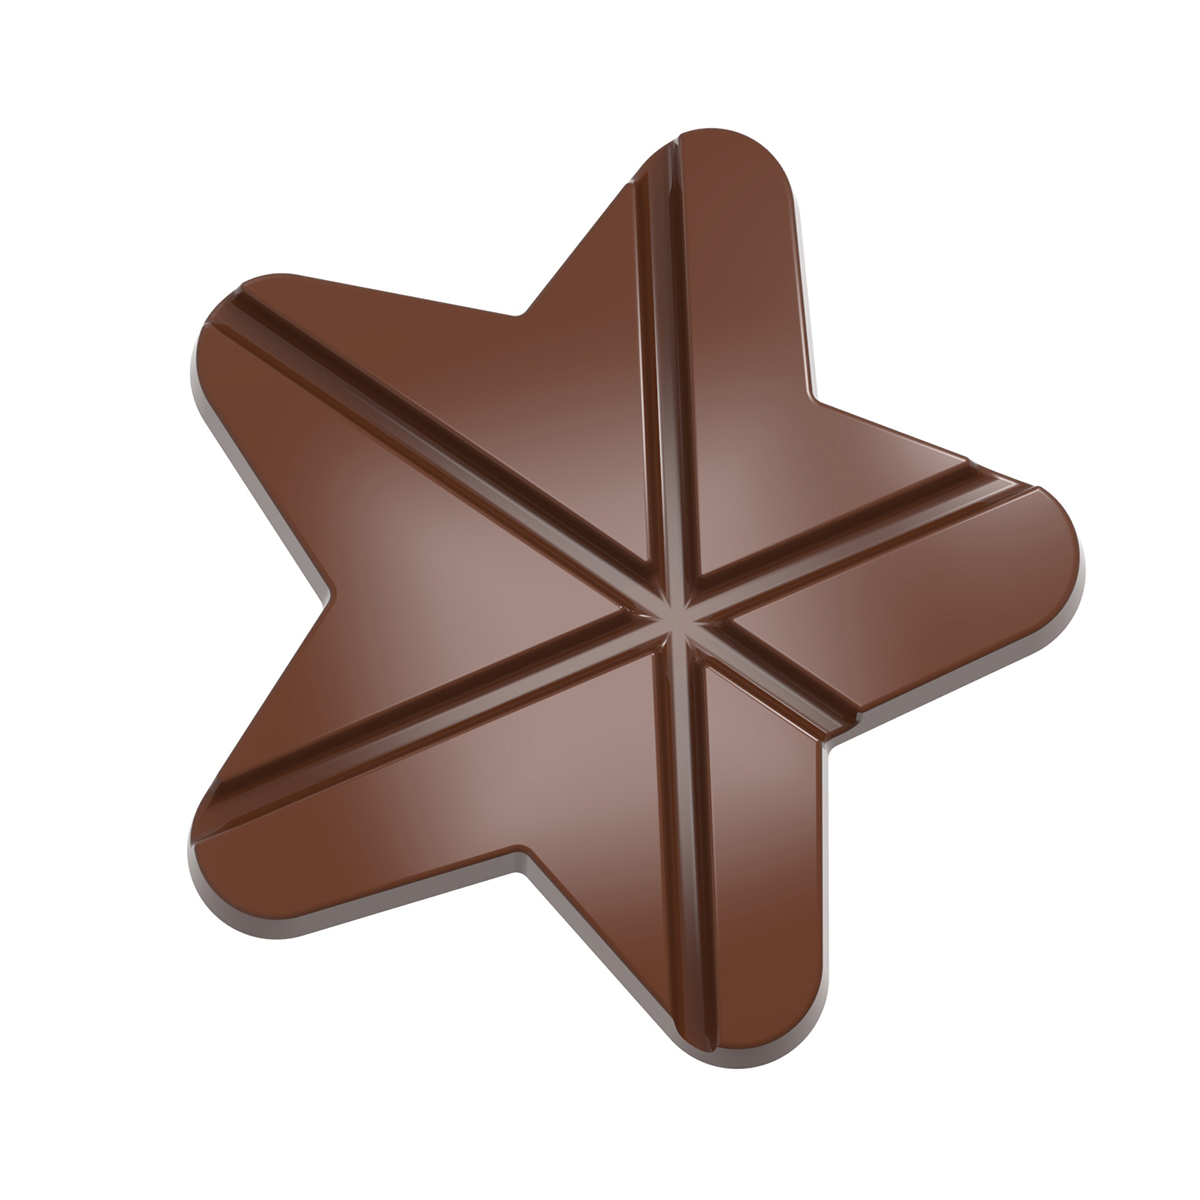 Se Professionel chokoladeform i polycarbonat - Tablet Star CW12045 hos BageTid.dk